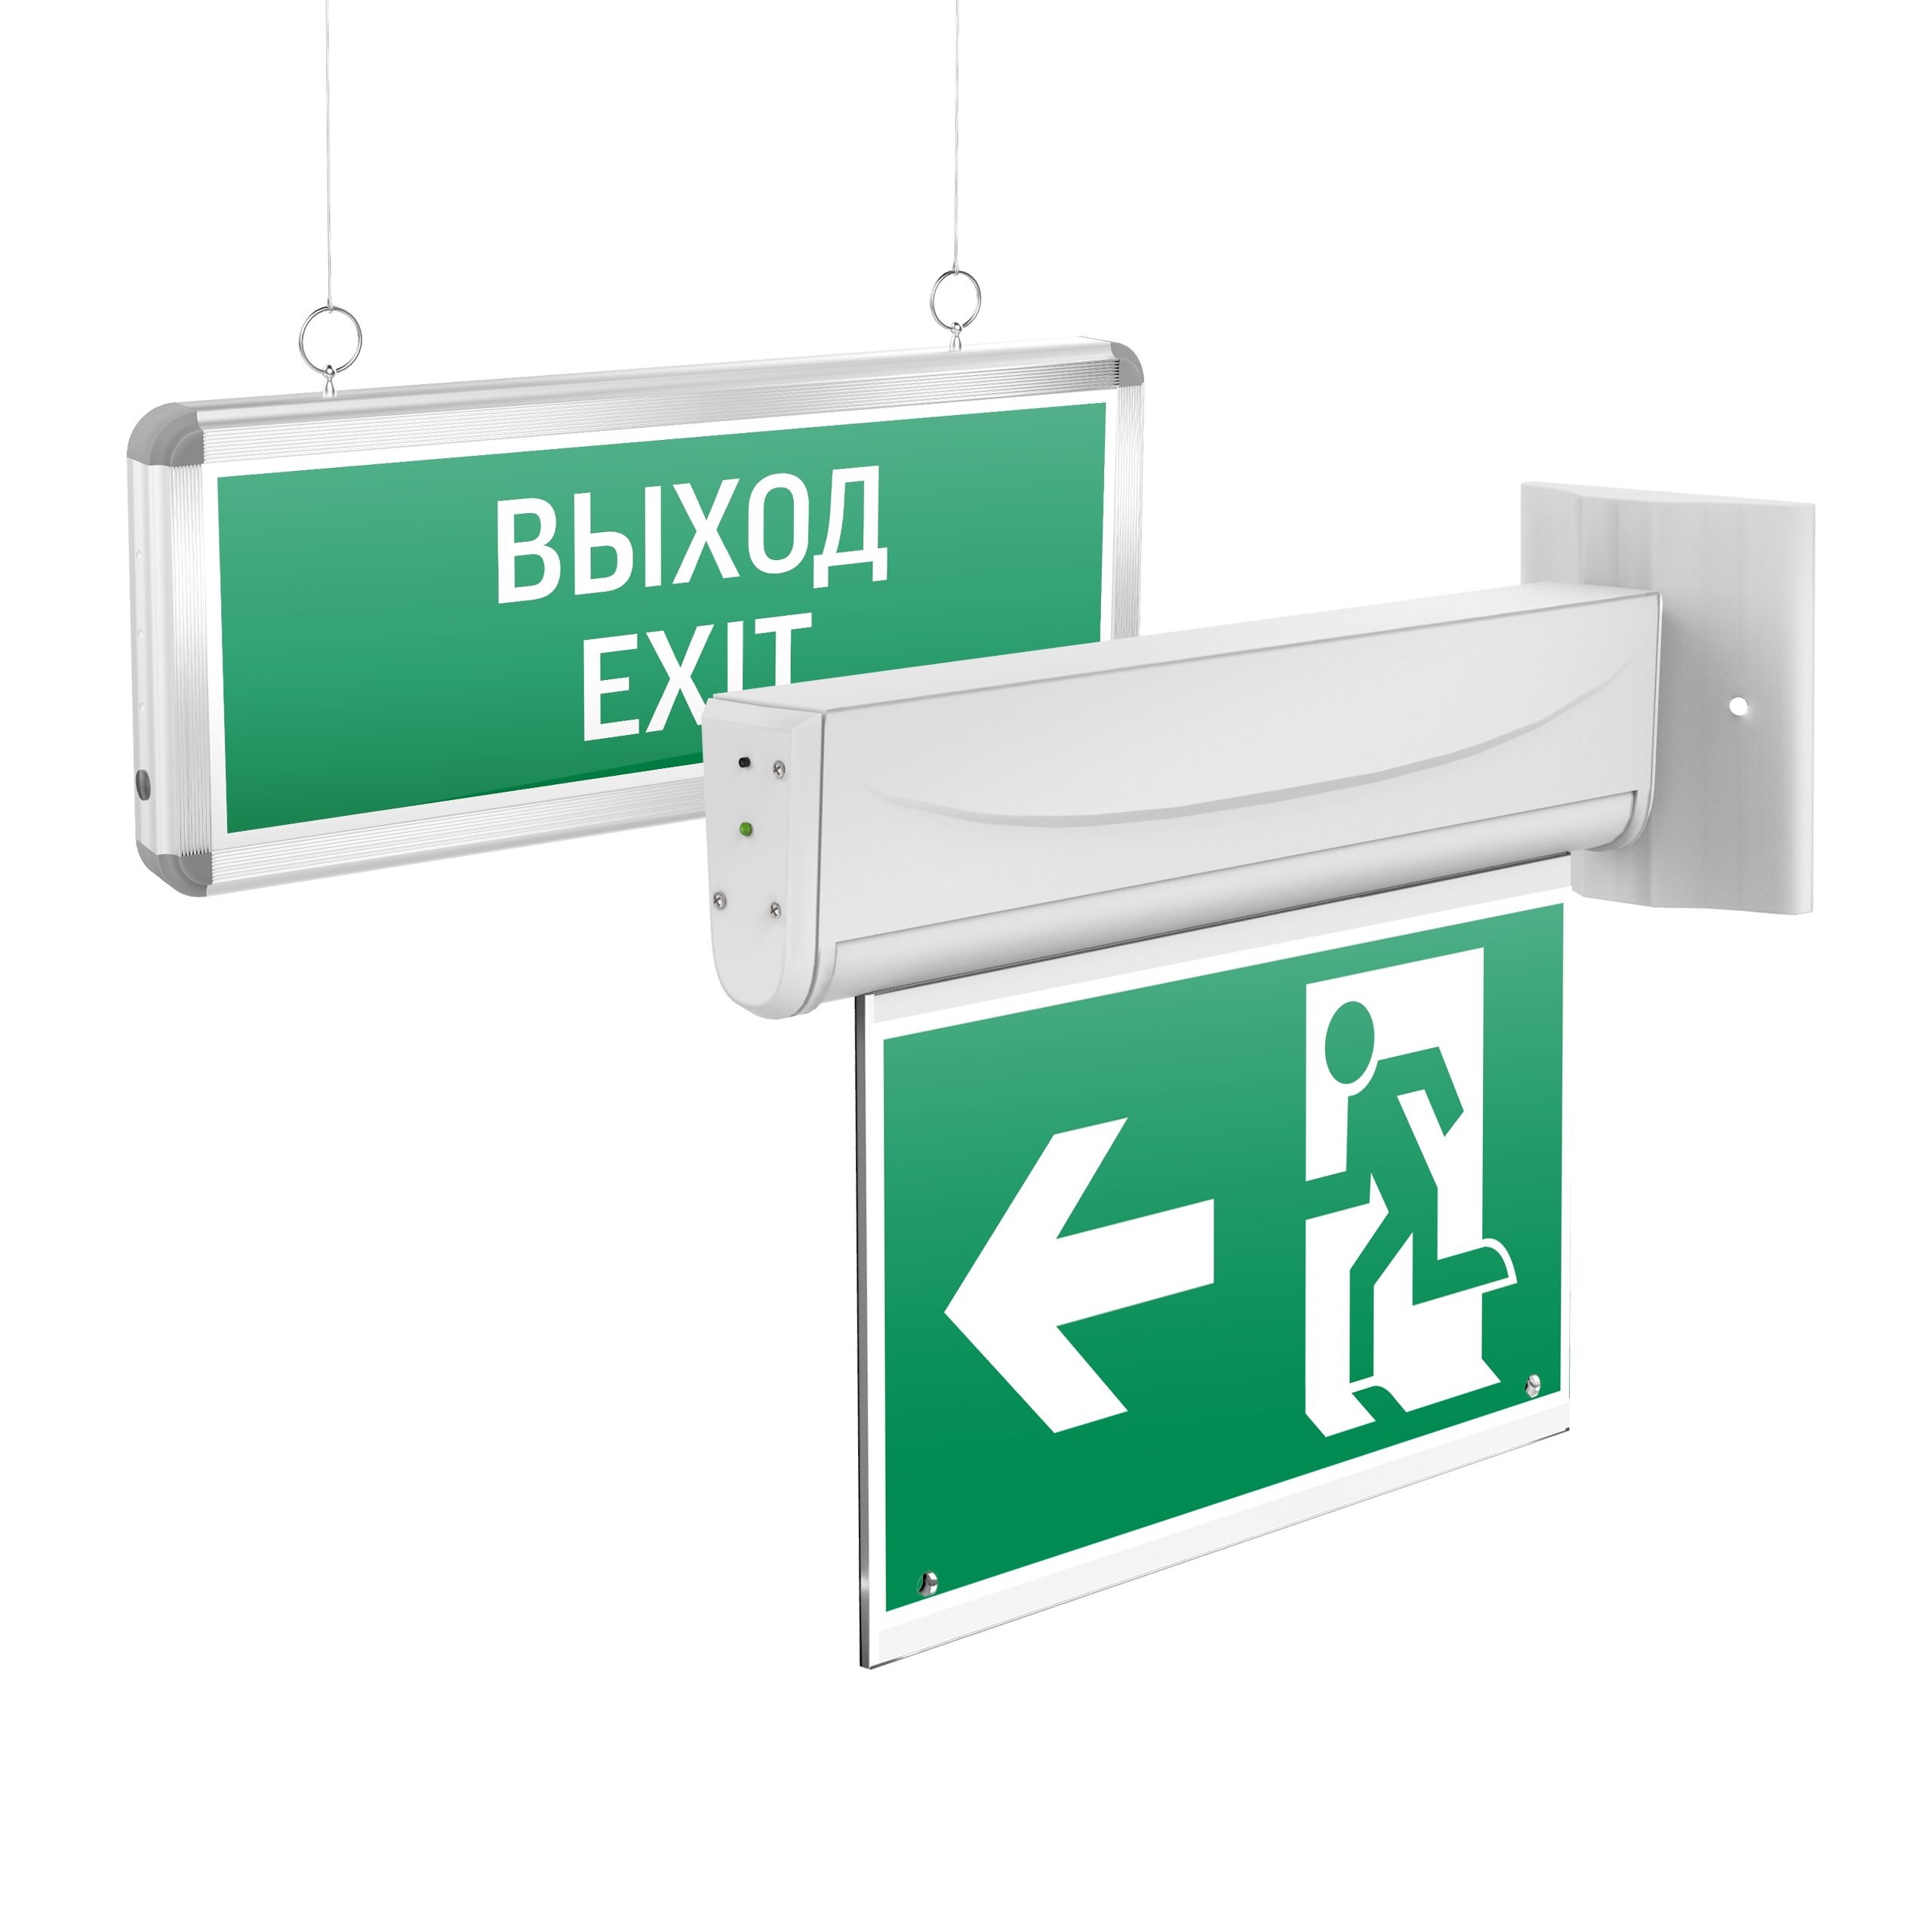  - Аварийно-эвакуационные световые указатели Basic с нанесенными пиктограммами